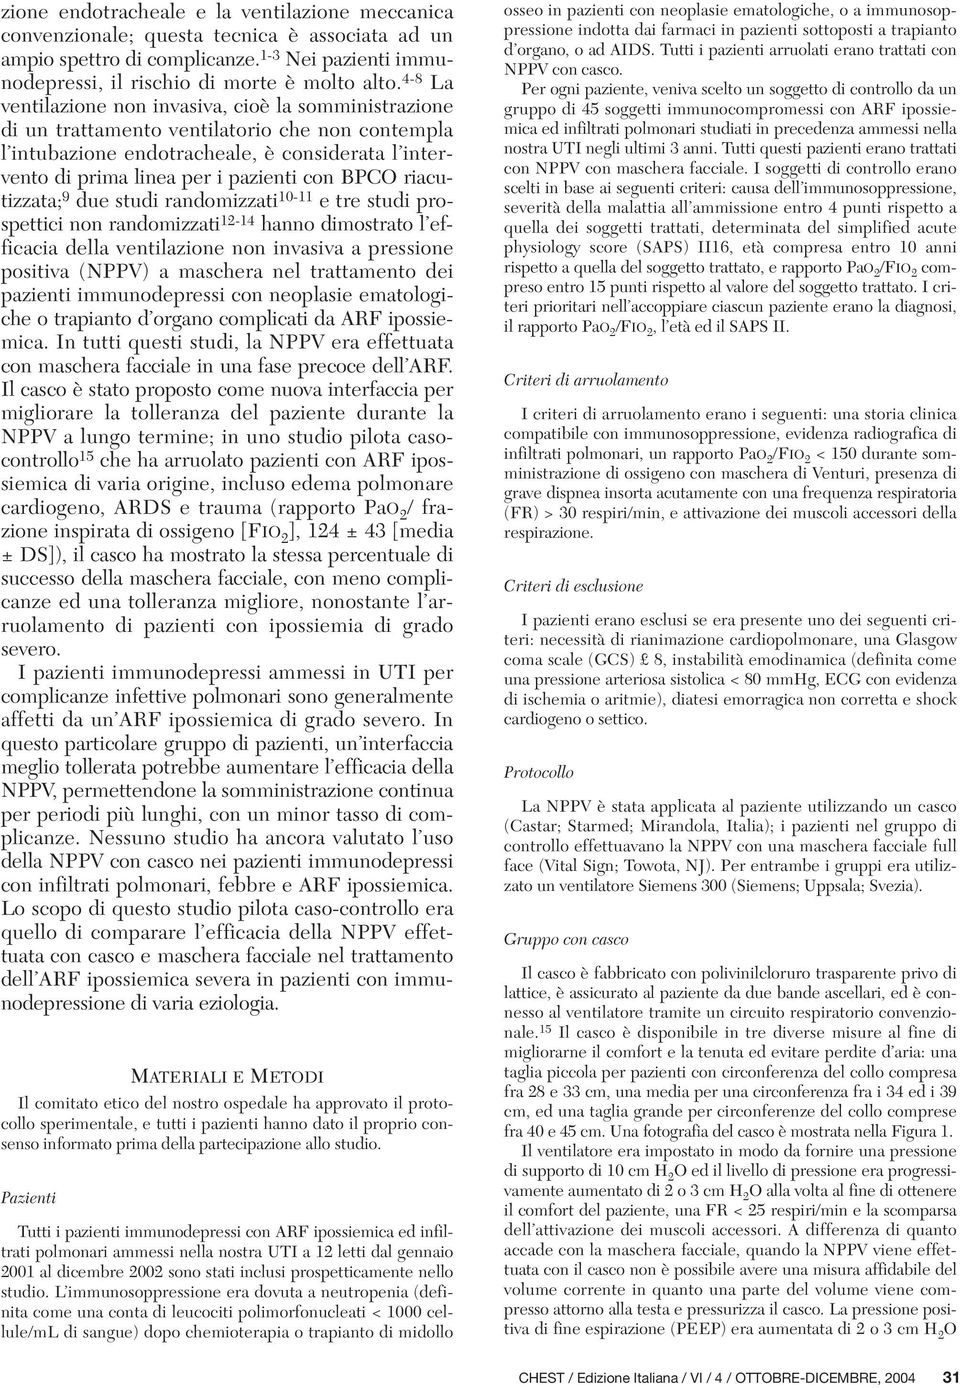 BPCO riacutizzata; 9 due studi randomizzati 10-11 e tre studi prospettici non randomizzati 12-14 hanno dimostrato l efficacia della ventilazione non invasiva a pressione positiva (NPPV) a maschera